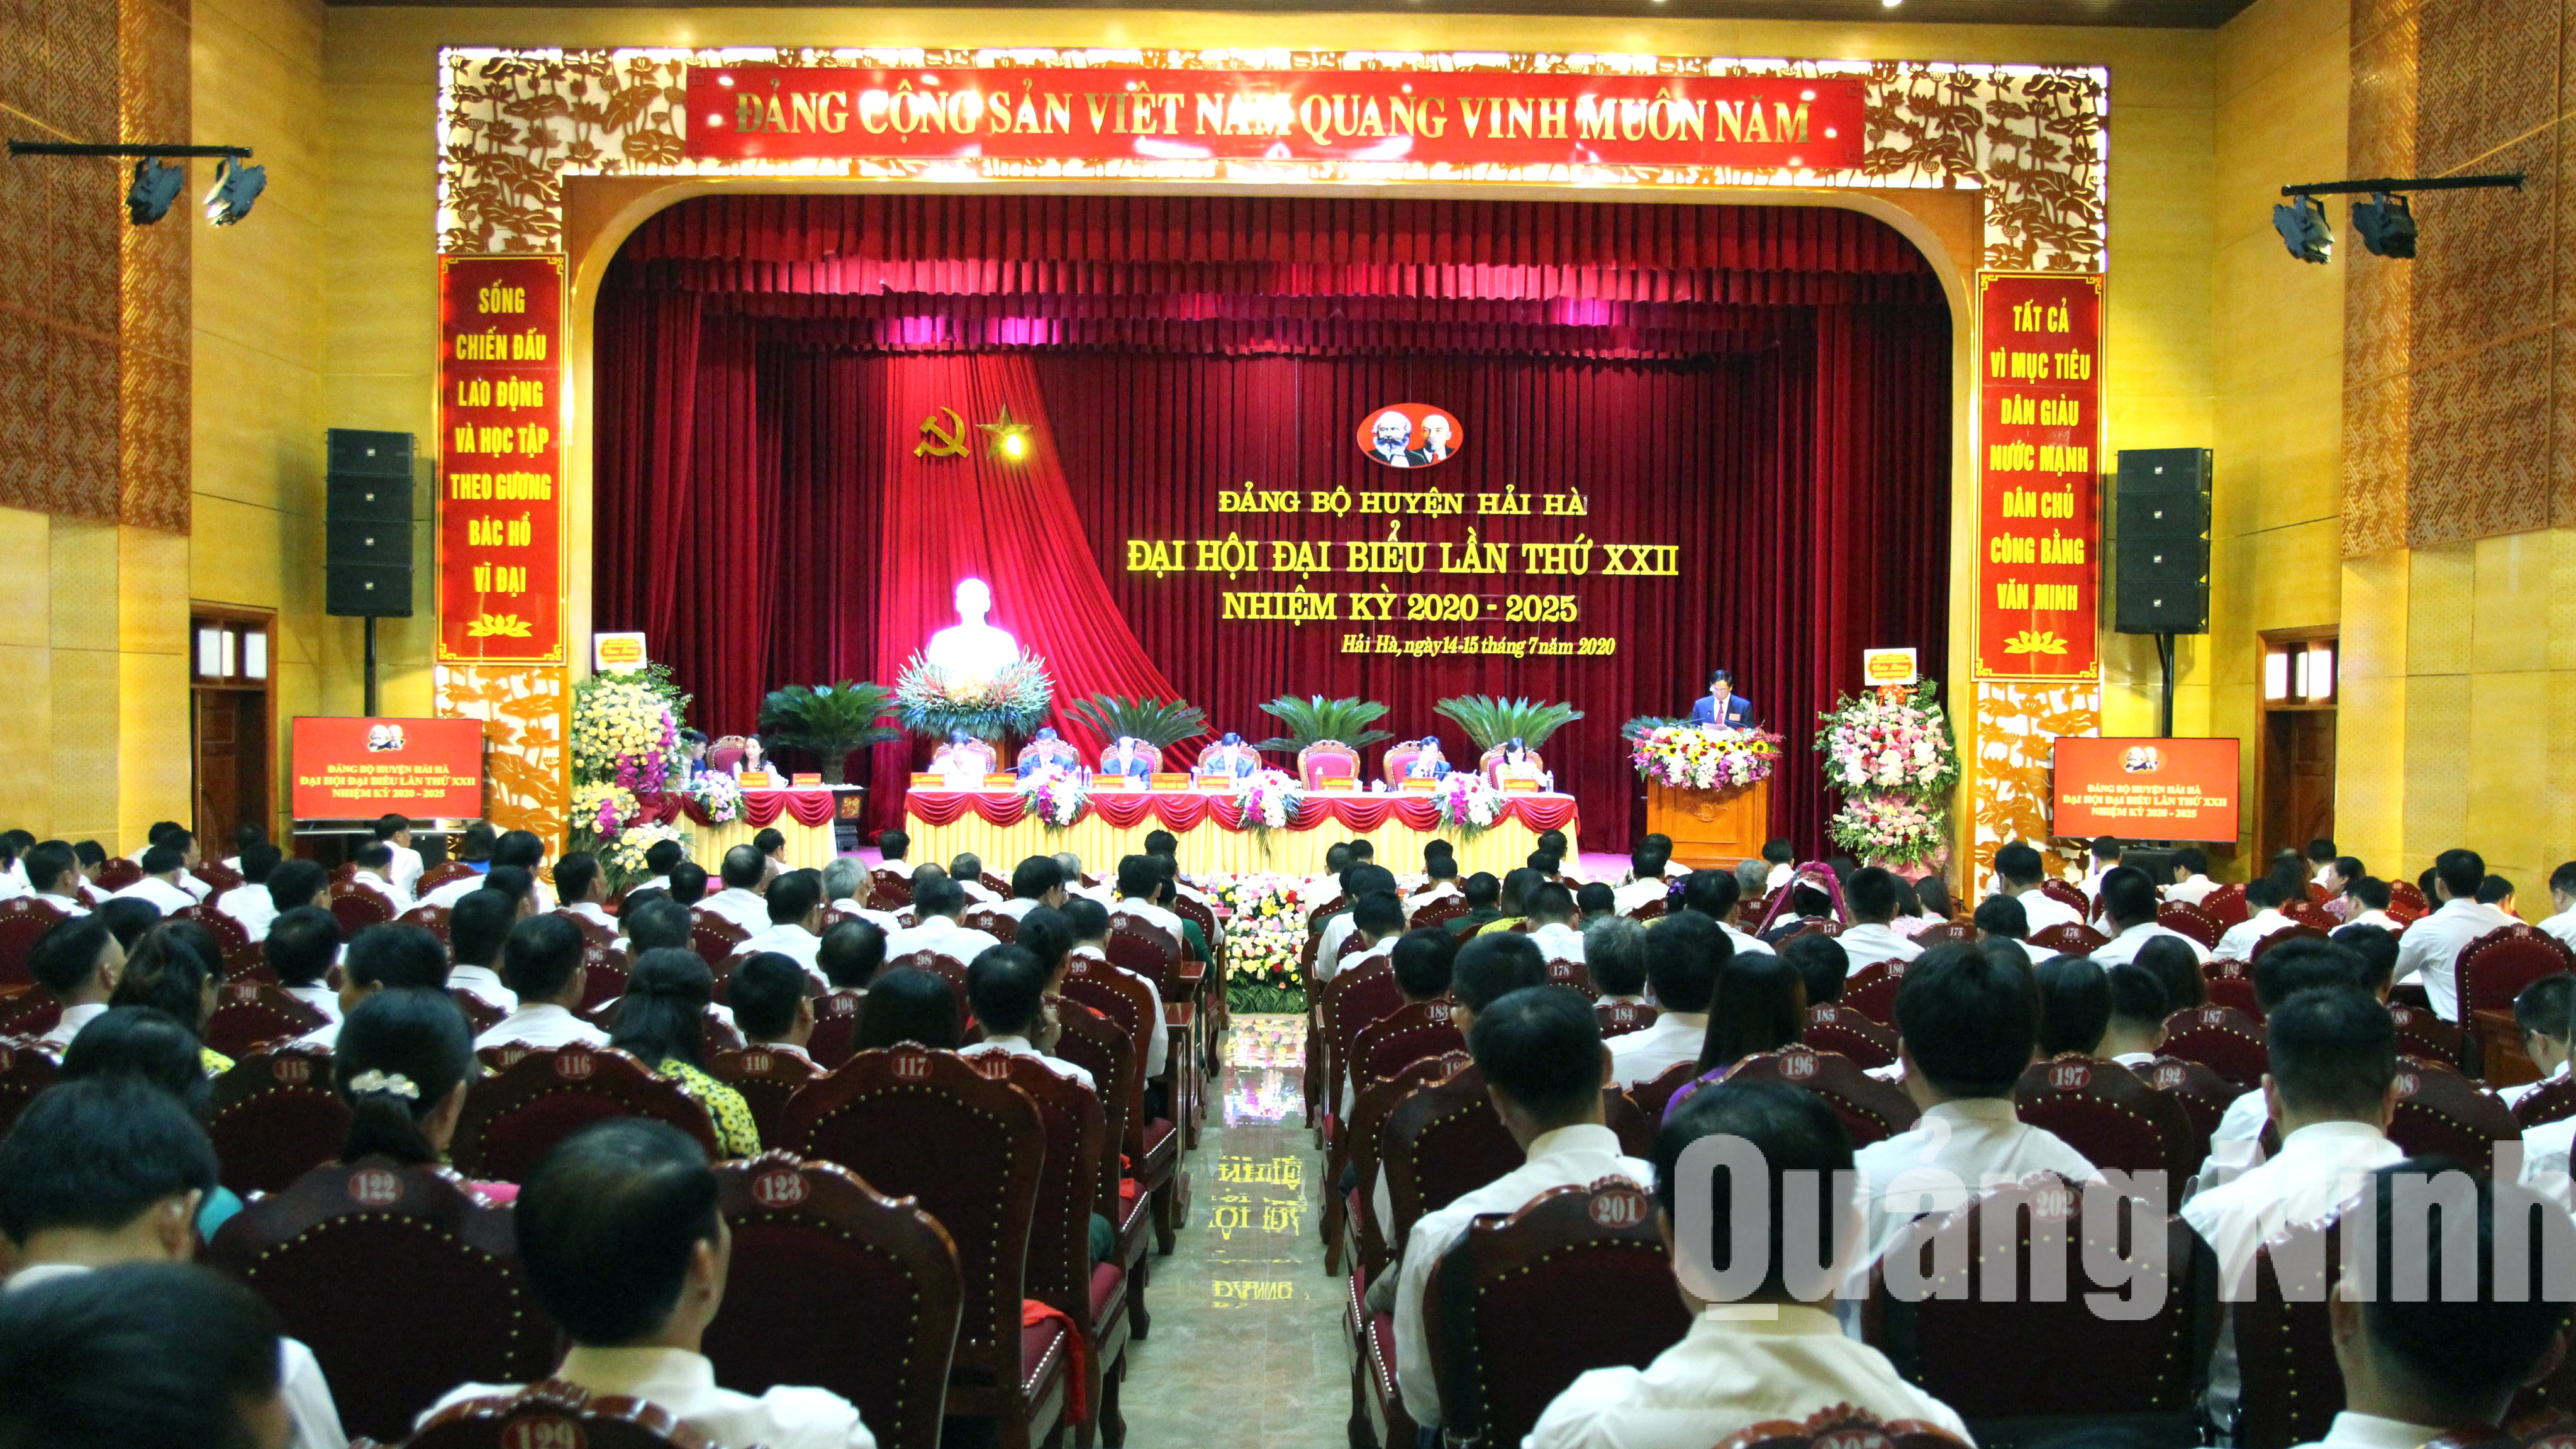 Quang cảnh đại hội (7-2020). Ảnh: Thu Chung